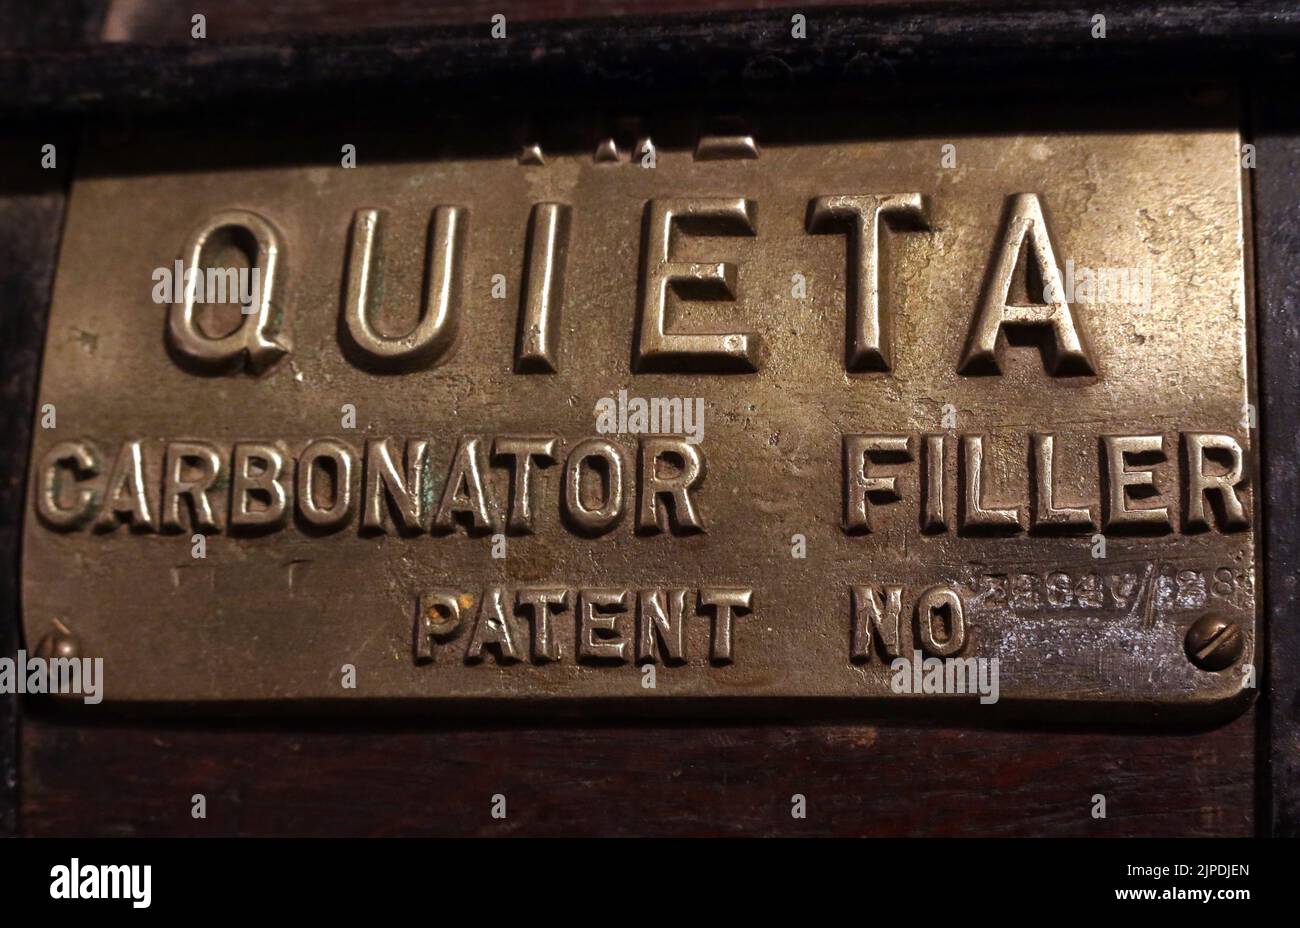 Plaque de fabricants, carbonateur de bouteille de brevet Quieta, machine de remplissage pour cidre, cidrerie, Hereford, Angleterre, Royaume-Uni Banque D'Images